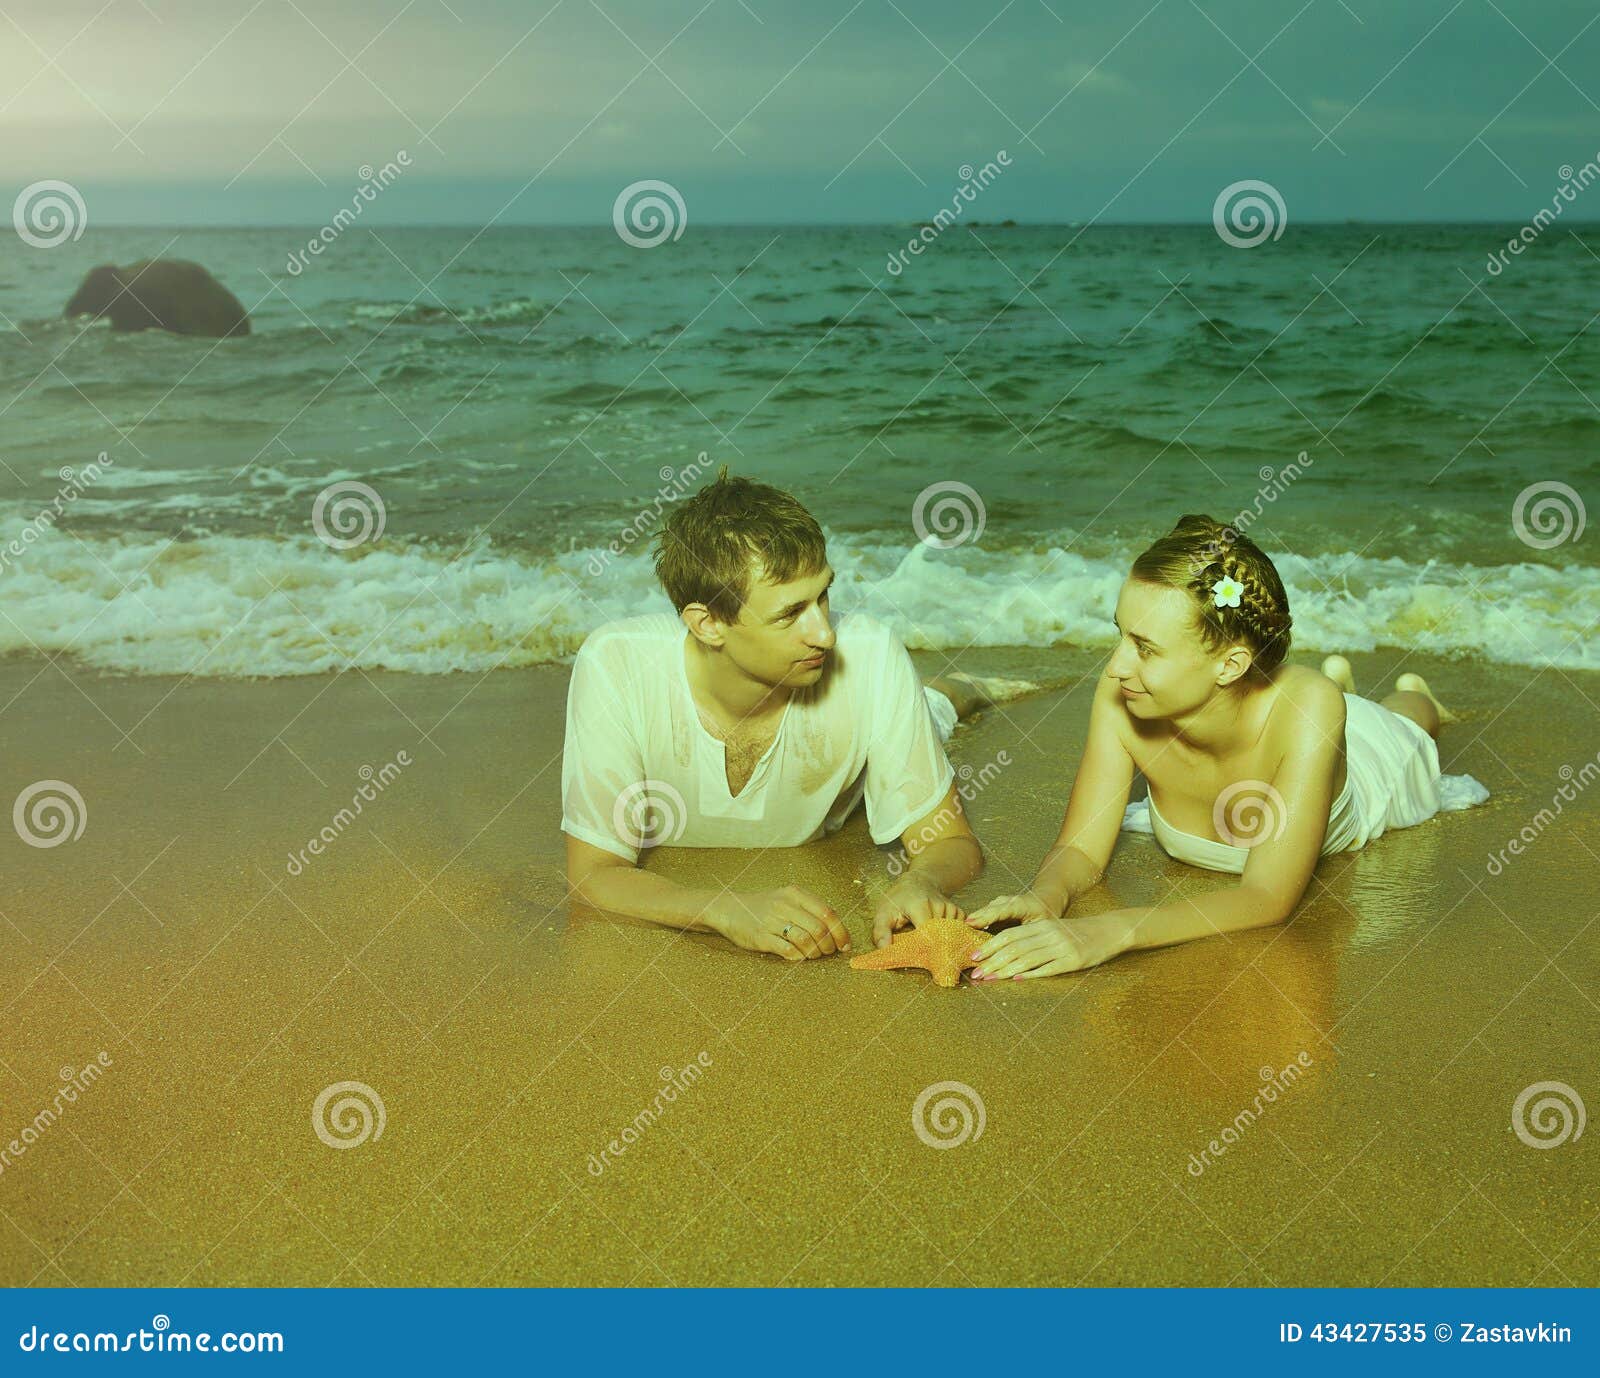 Instagram colorized pares del vintage en el retrato de la playa. Instagram colorized el retrato al aire libre del vintage de pares románticos jovenes en la ropa blanca del algodón en la playa de la isla de Phuket, Tailandia